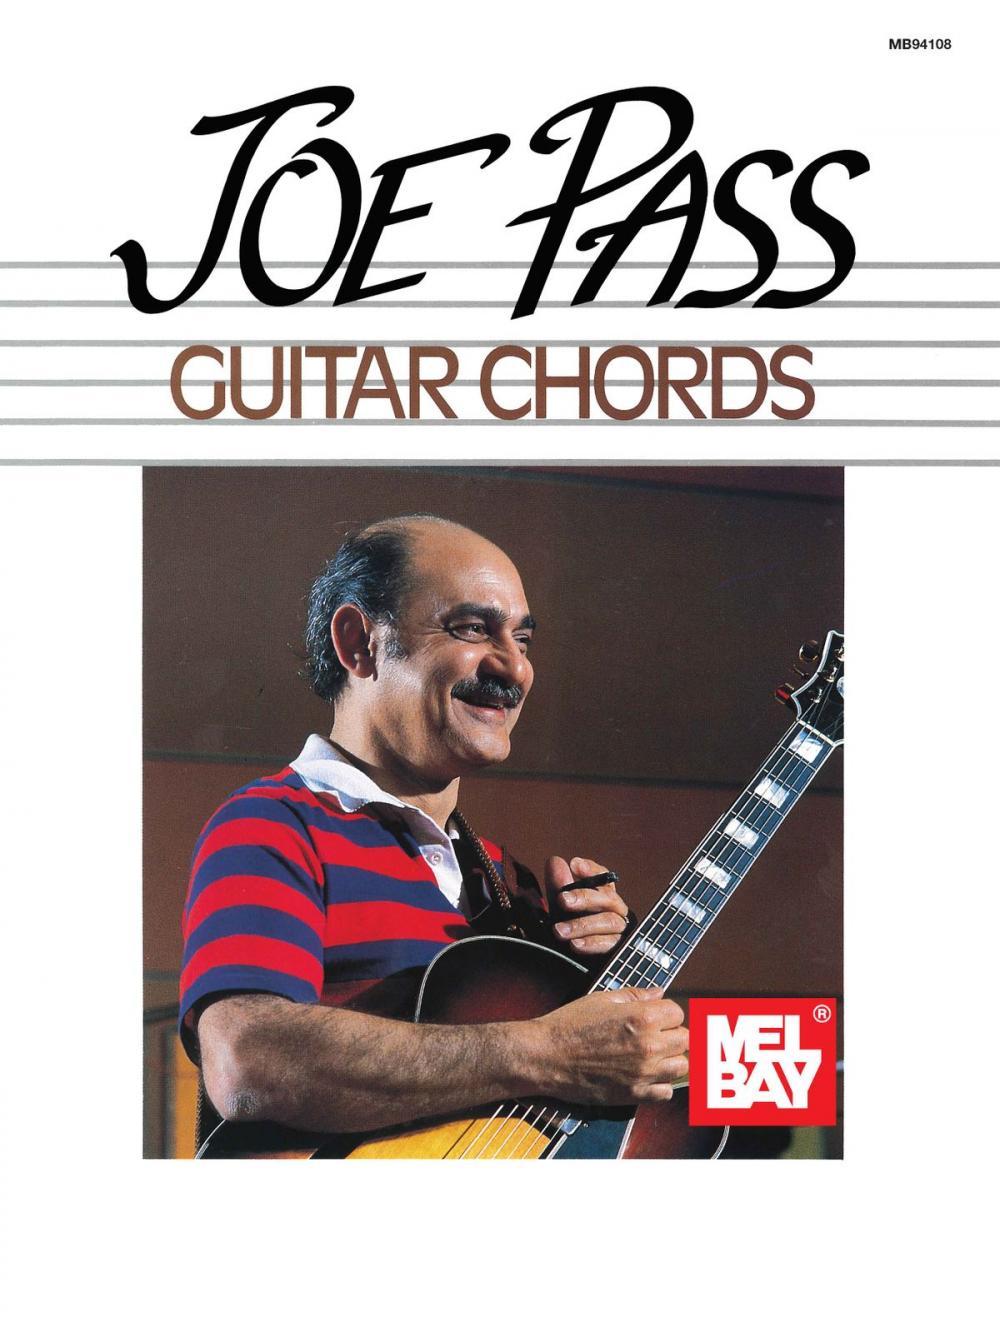 Big bigCover of Joe Pass Guitar Chords